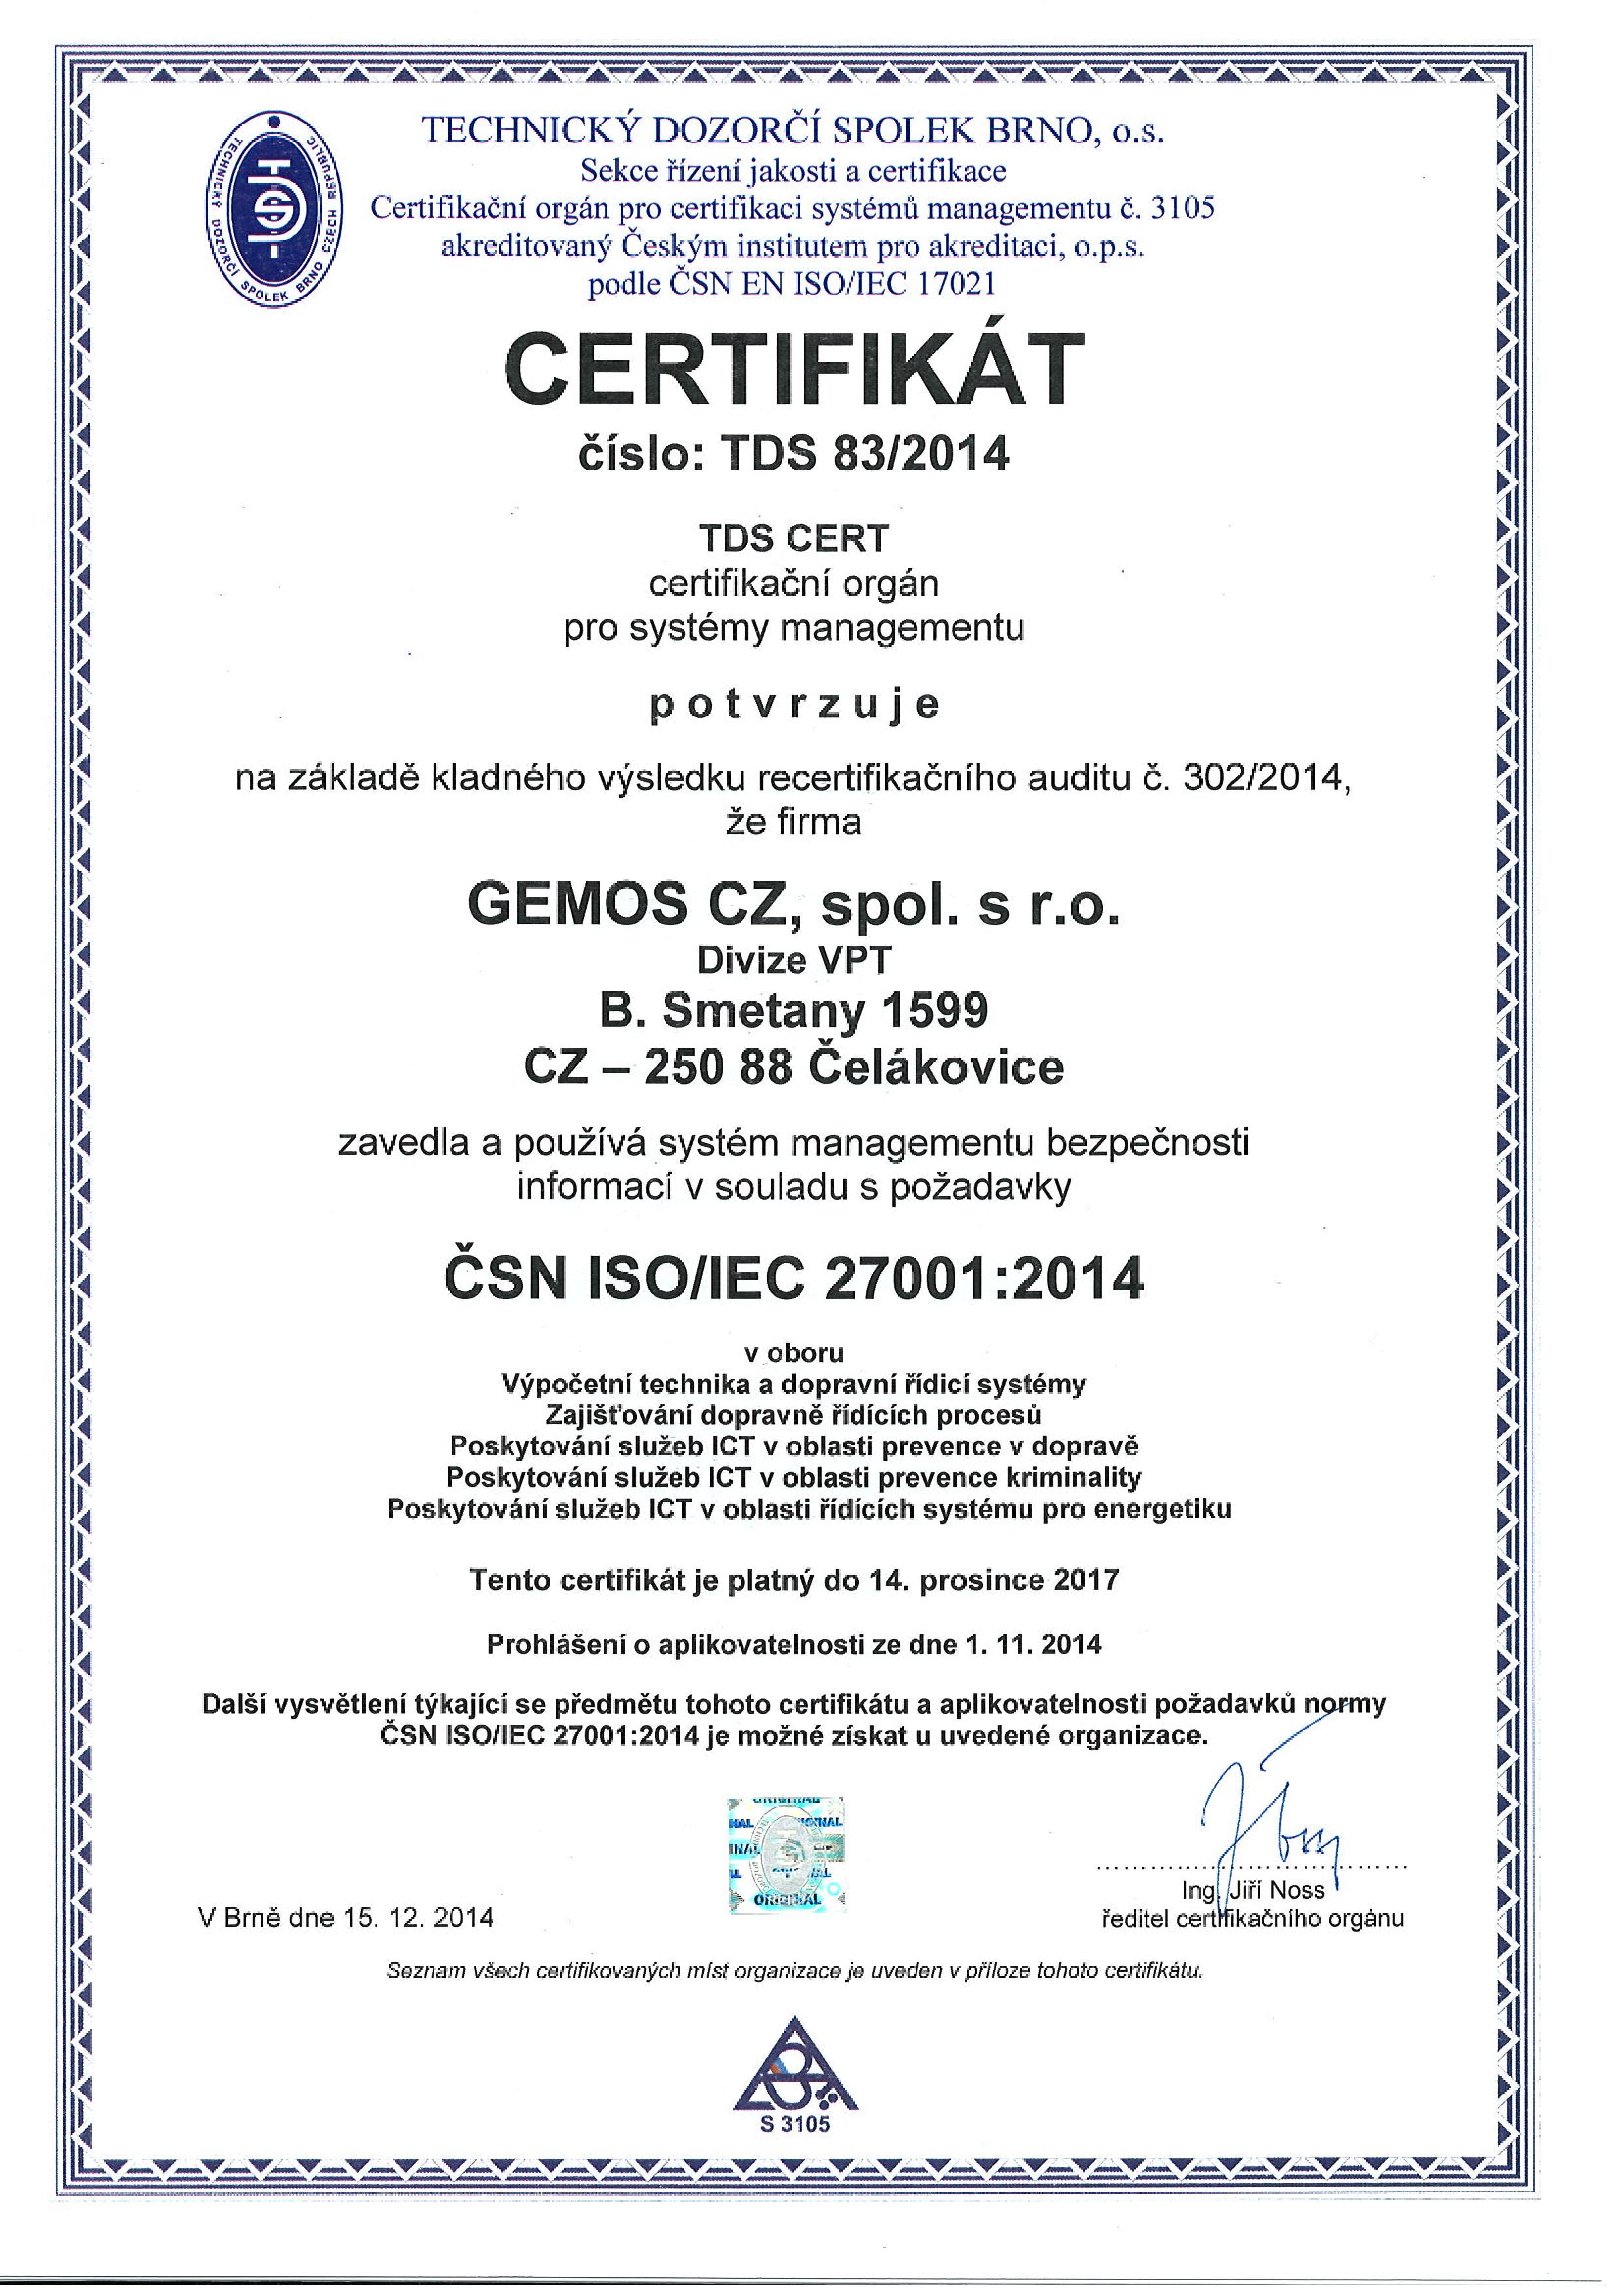 Certifikát ČSN ISO/IEC 27001 udělený společnosti GEMOS CZ